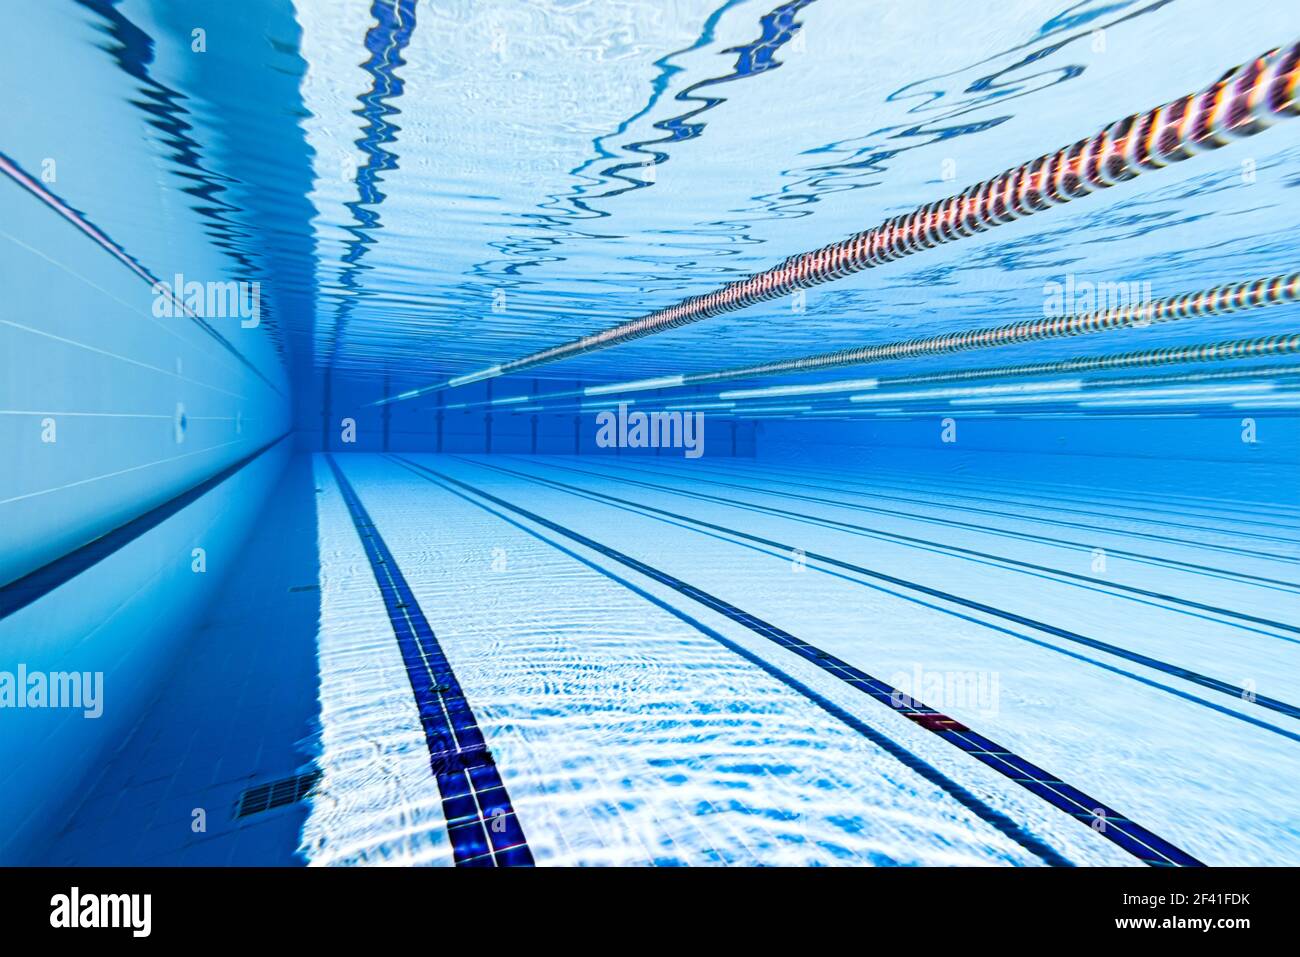 Piscina olimpionica sfondo subacqueo. Foto Stock